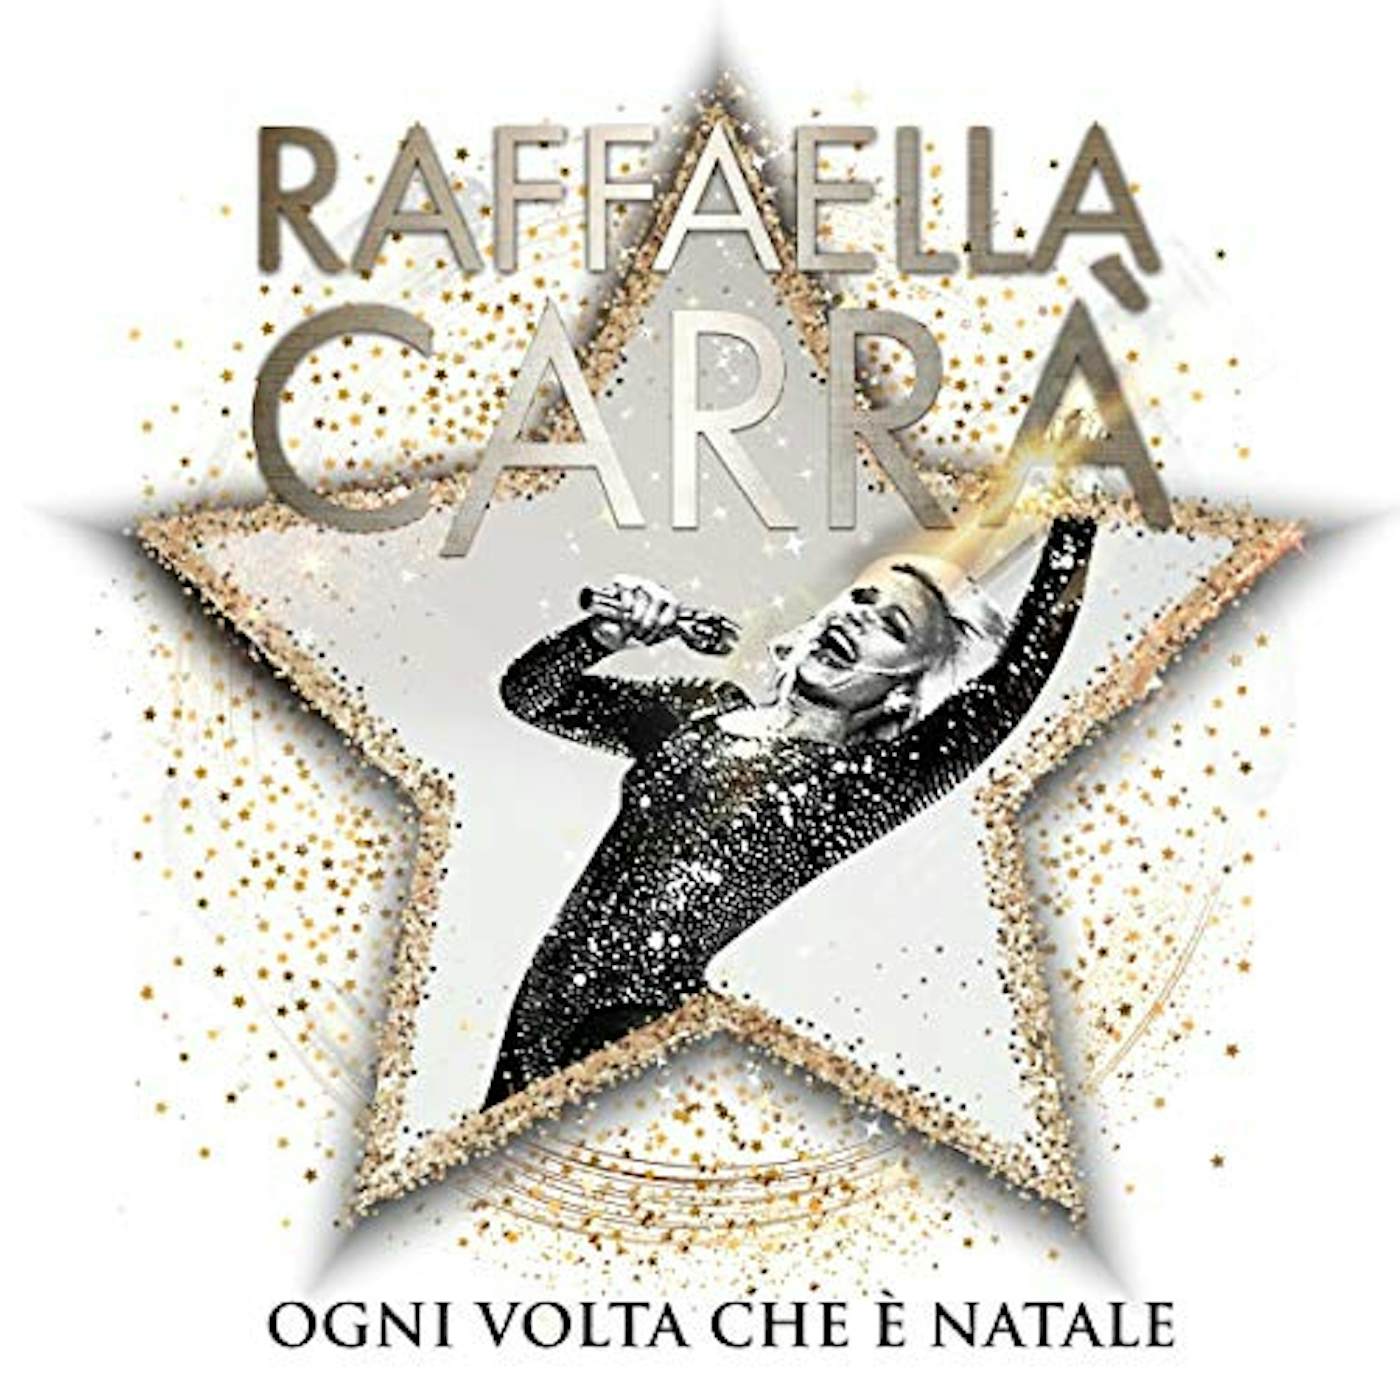 Raffaella Carrà OGNI VOLTA CHE E NATALE Vinyl Record